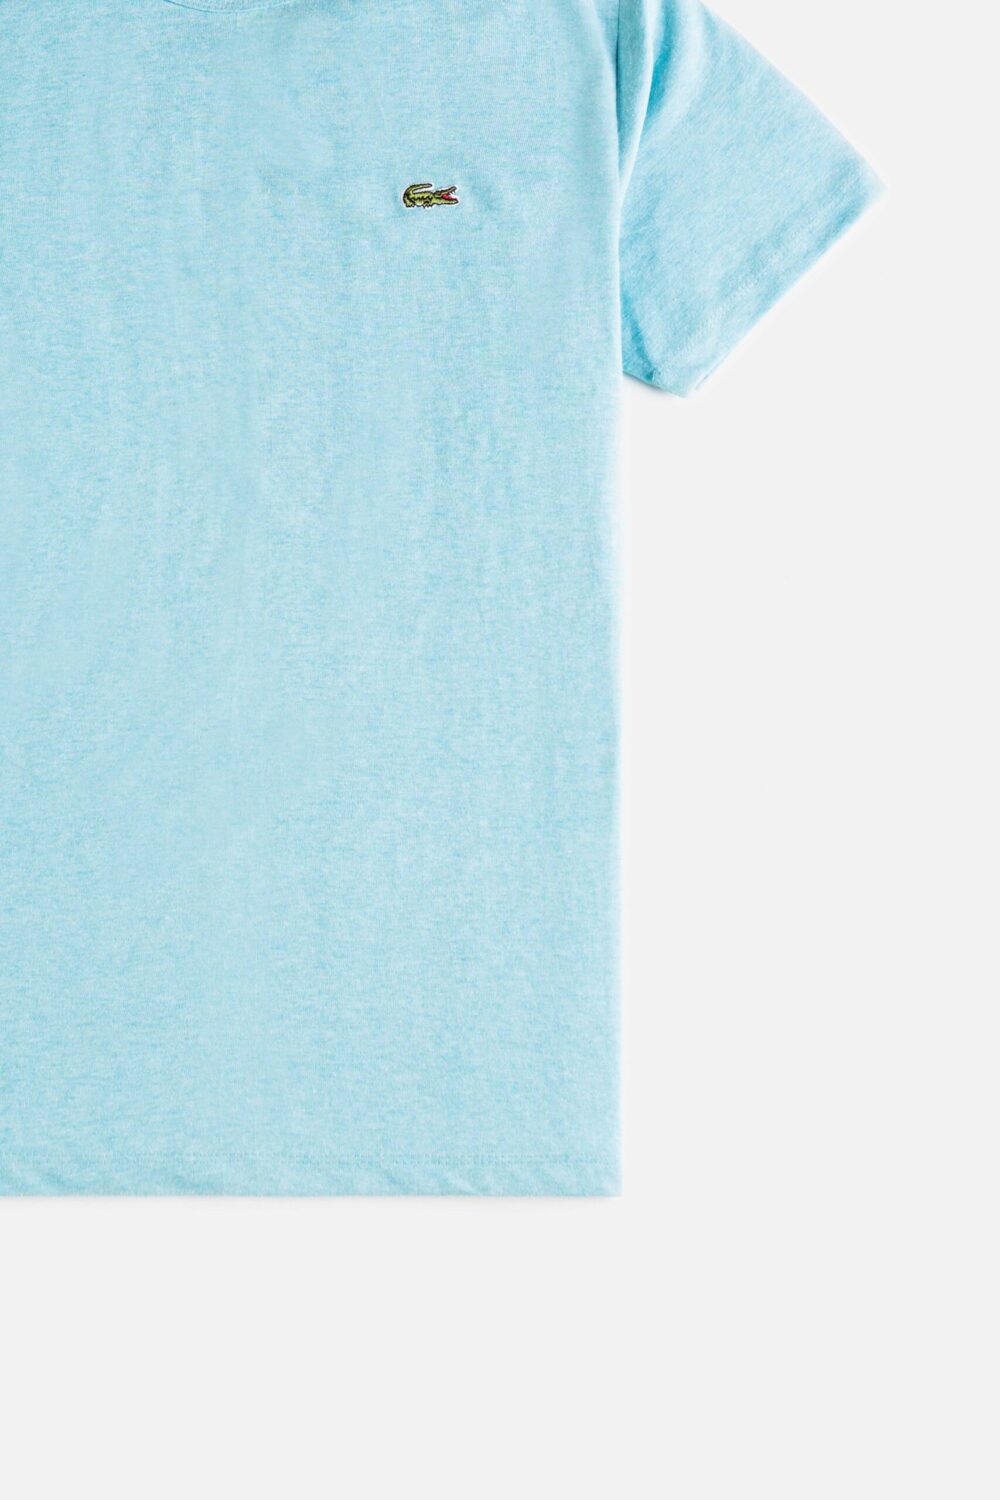 Lacoste Premium Cotton T Shirt – Mint